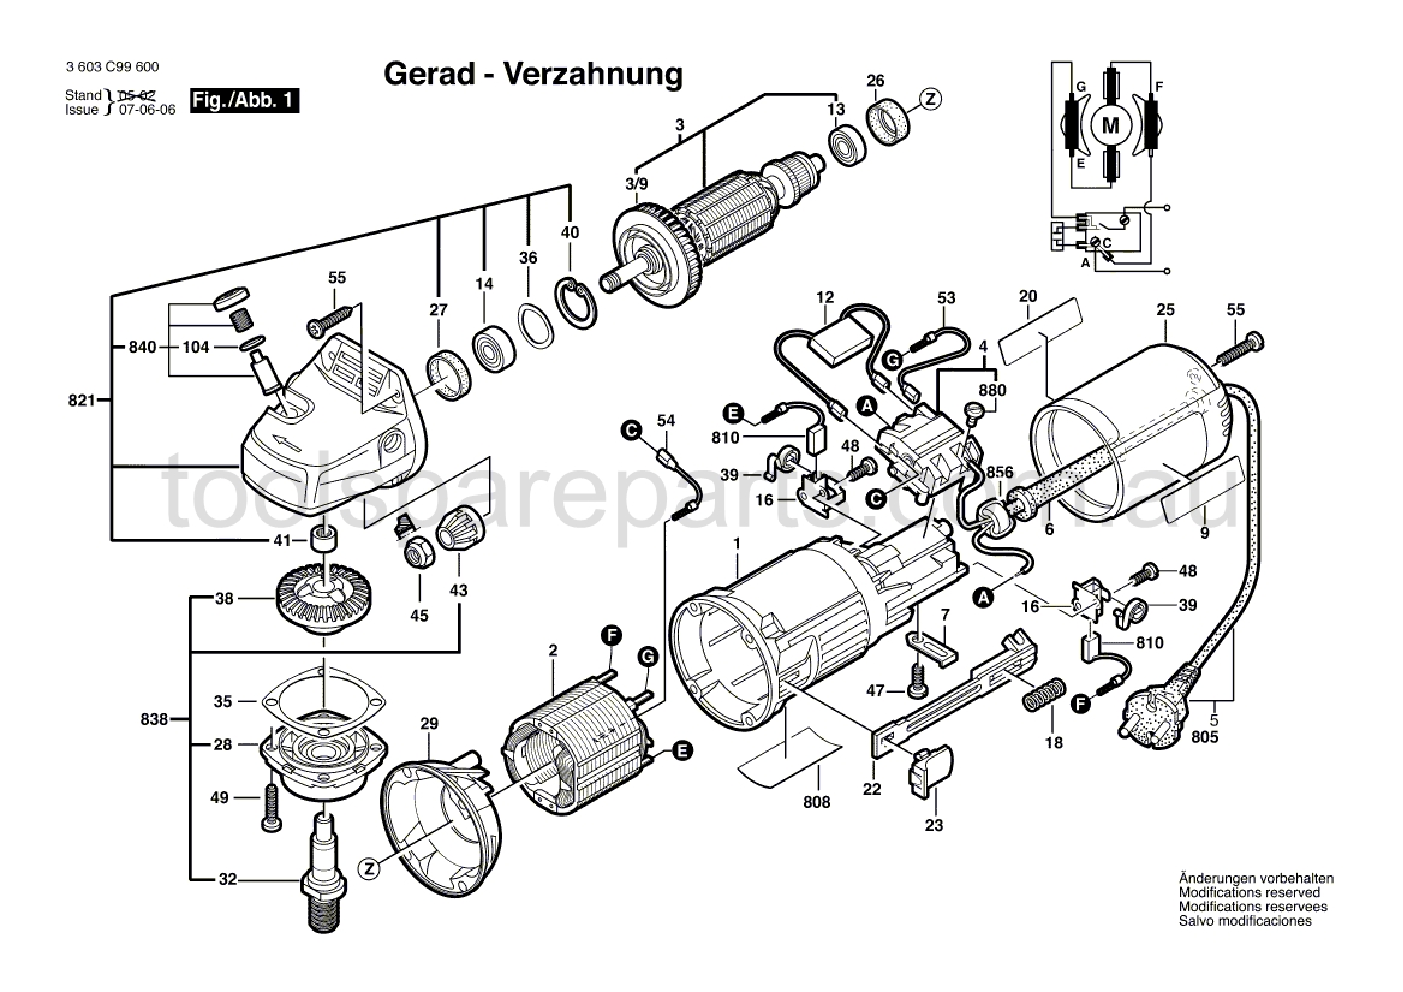 Bosch PWS 7-115 3603C99641  Diagram 1